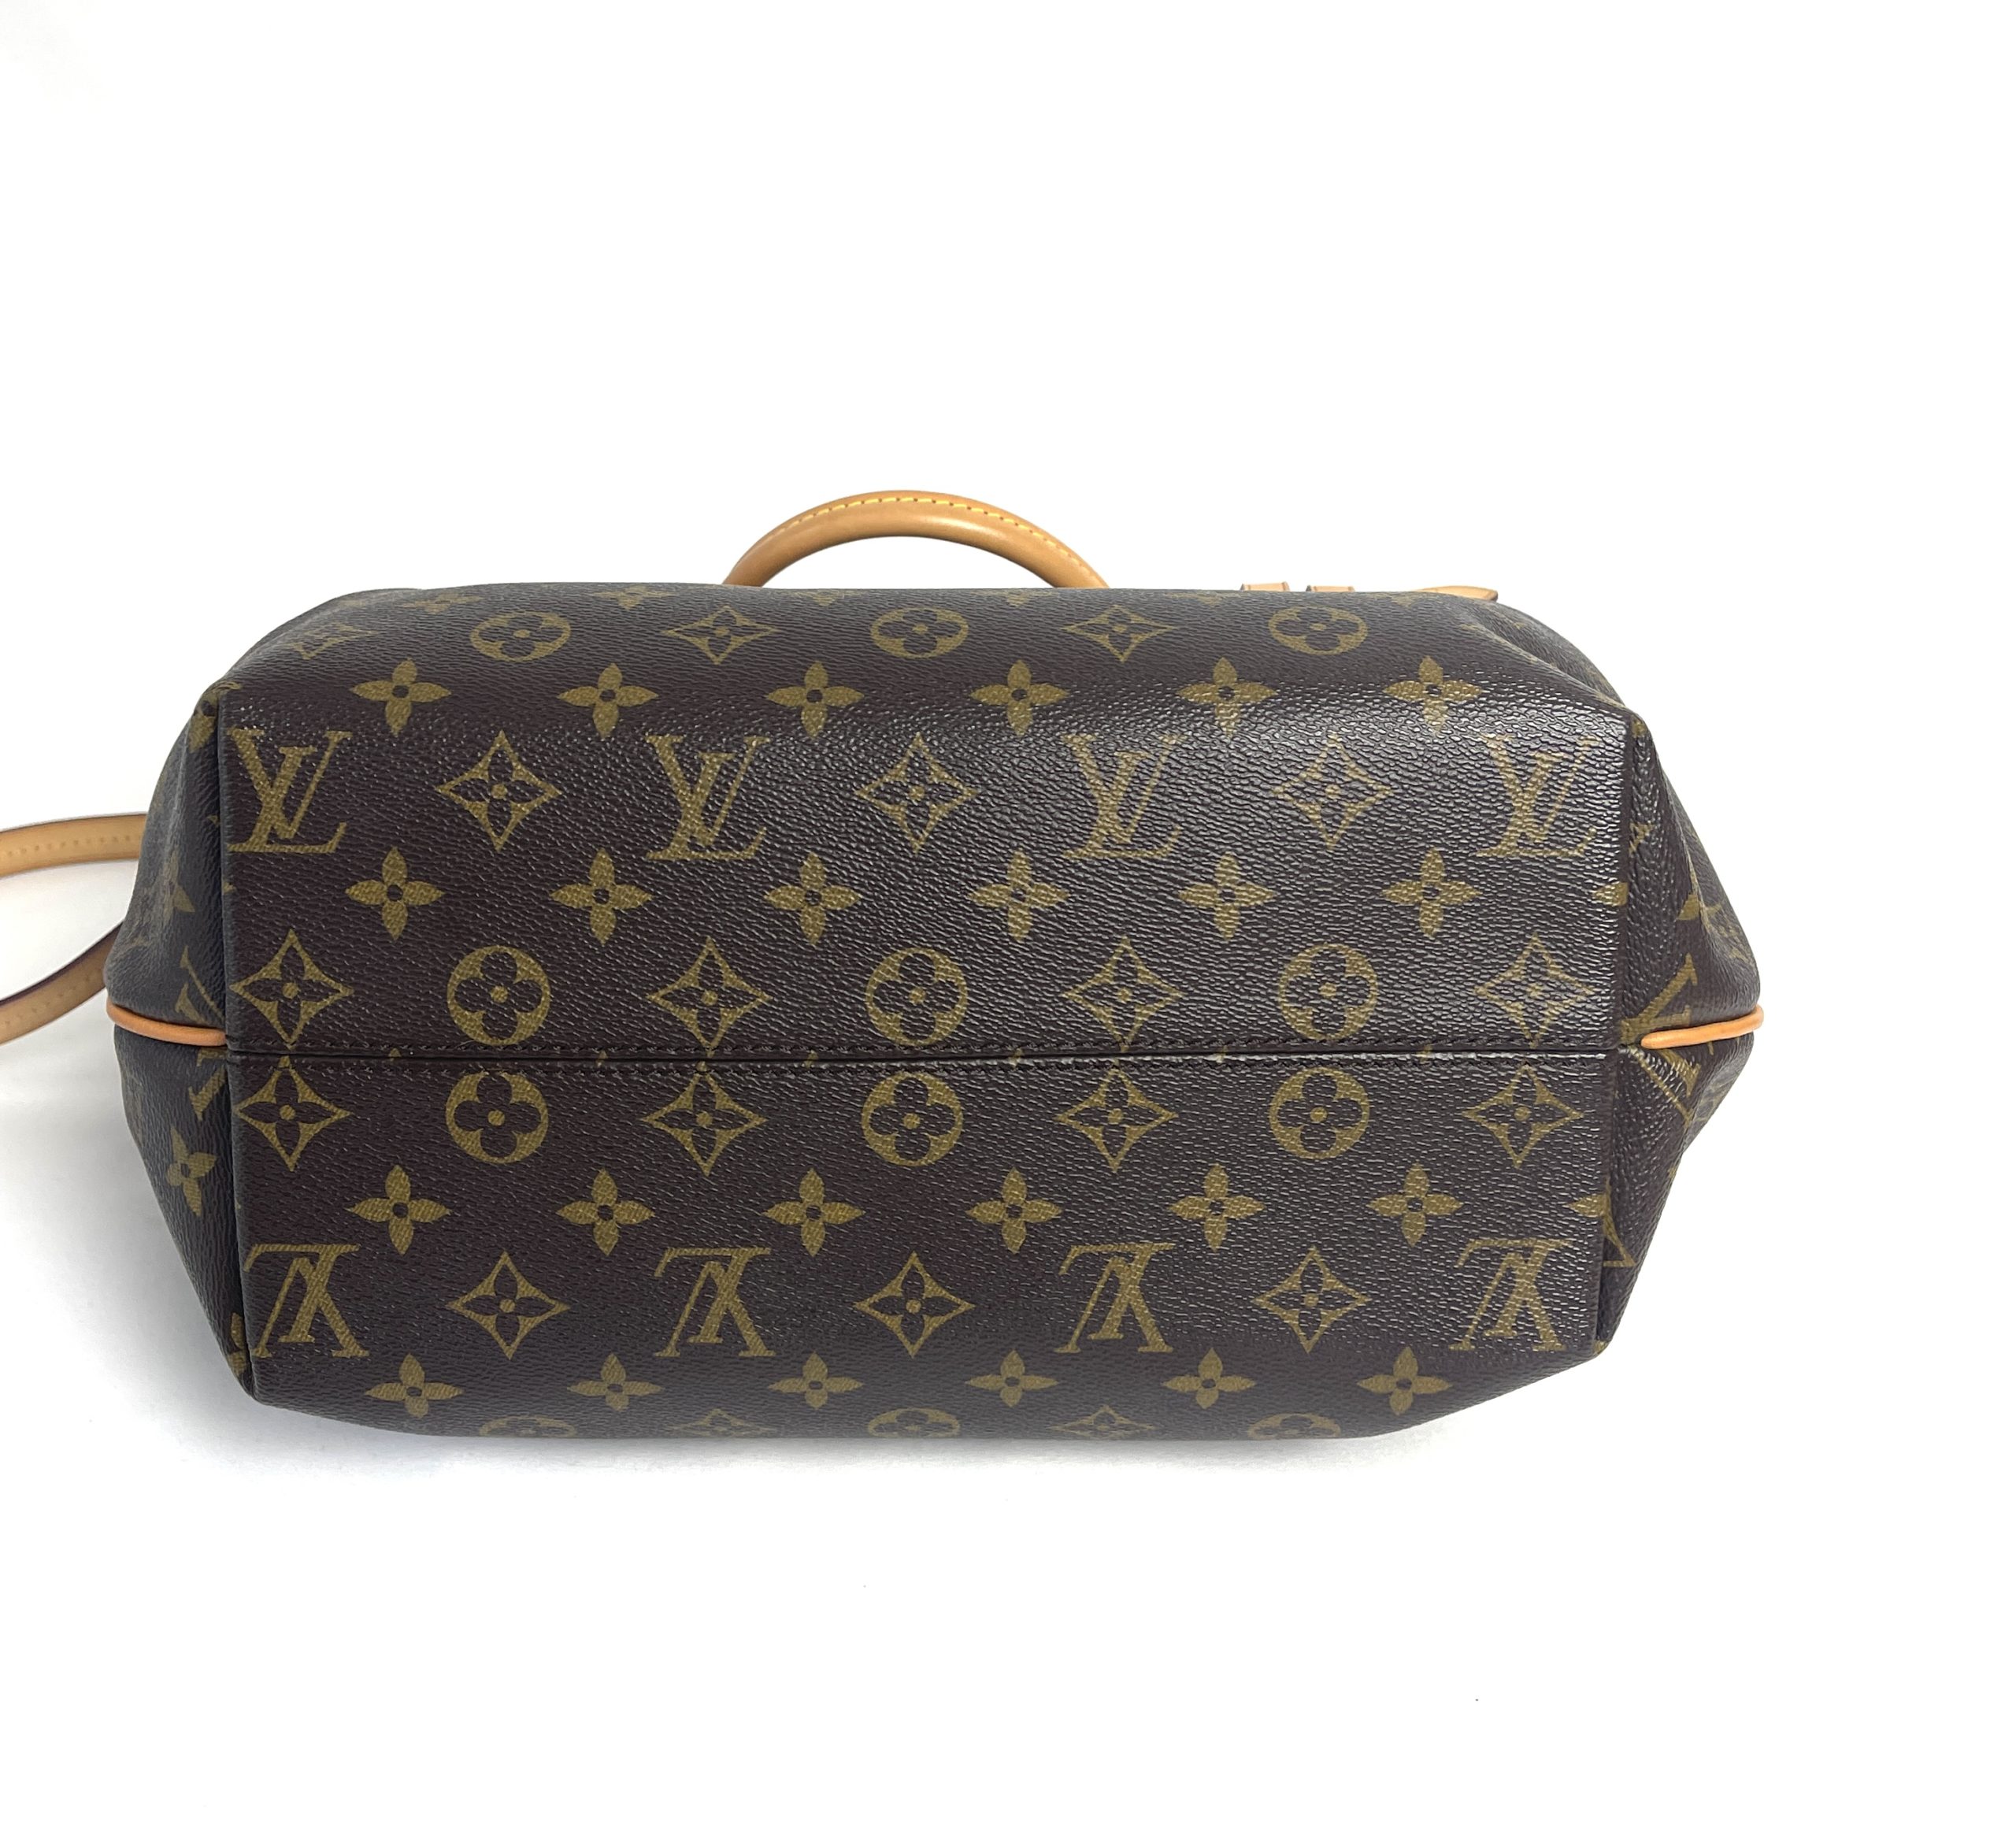 Authentic Louis Vuitton Turenne GM Monogram M48815 Shoulder Bag